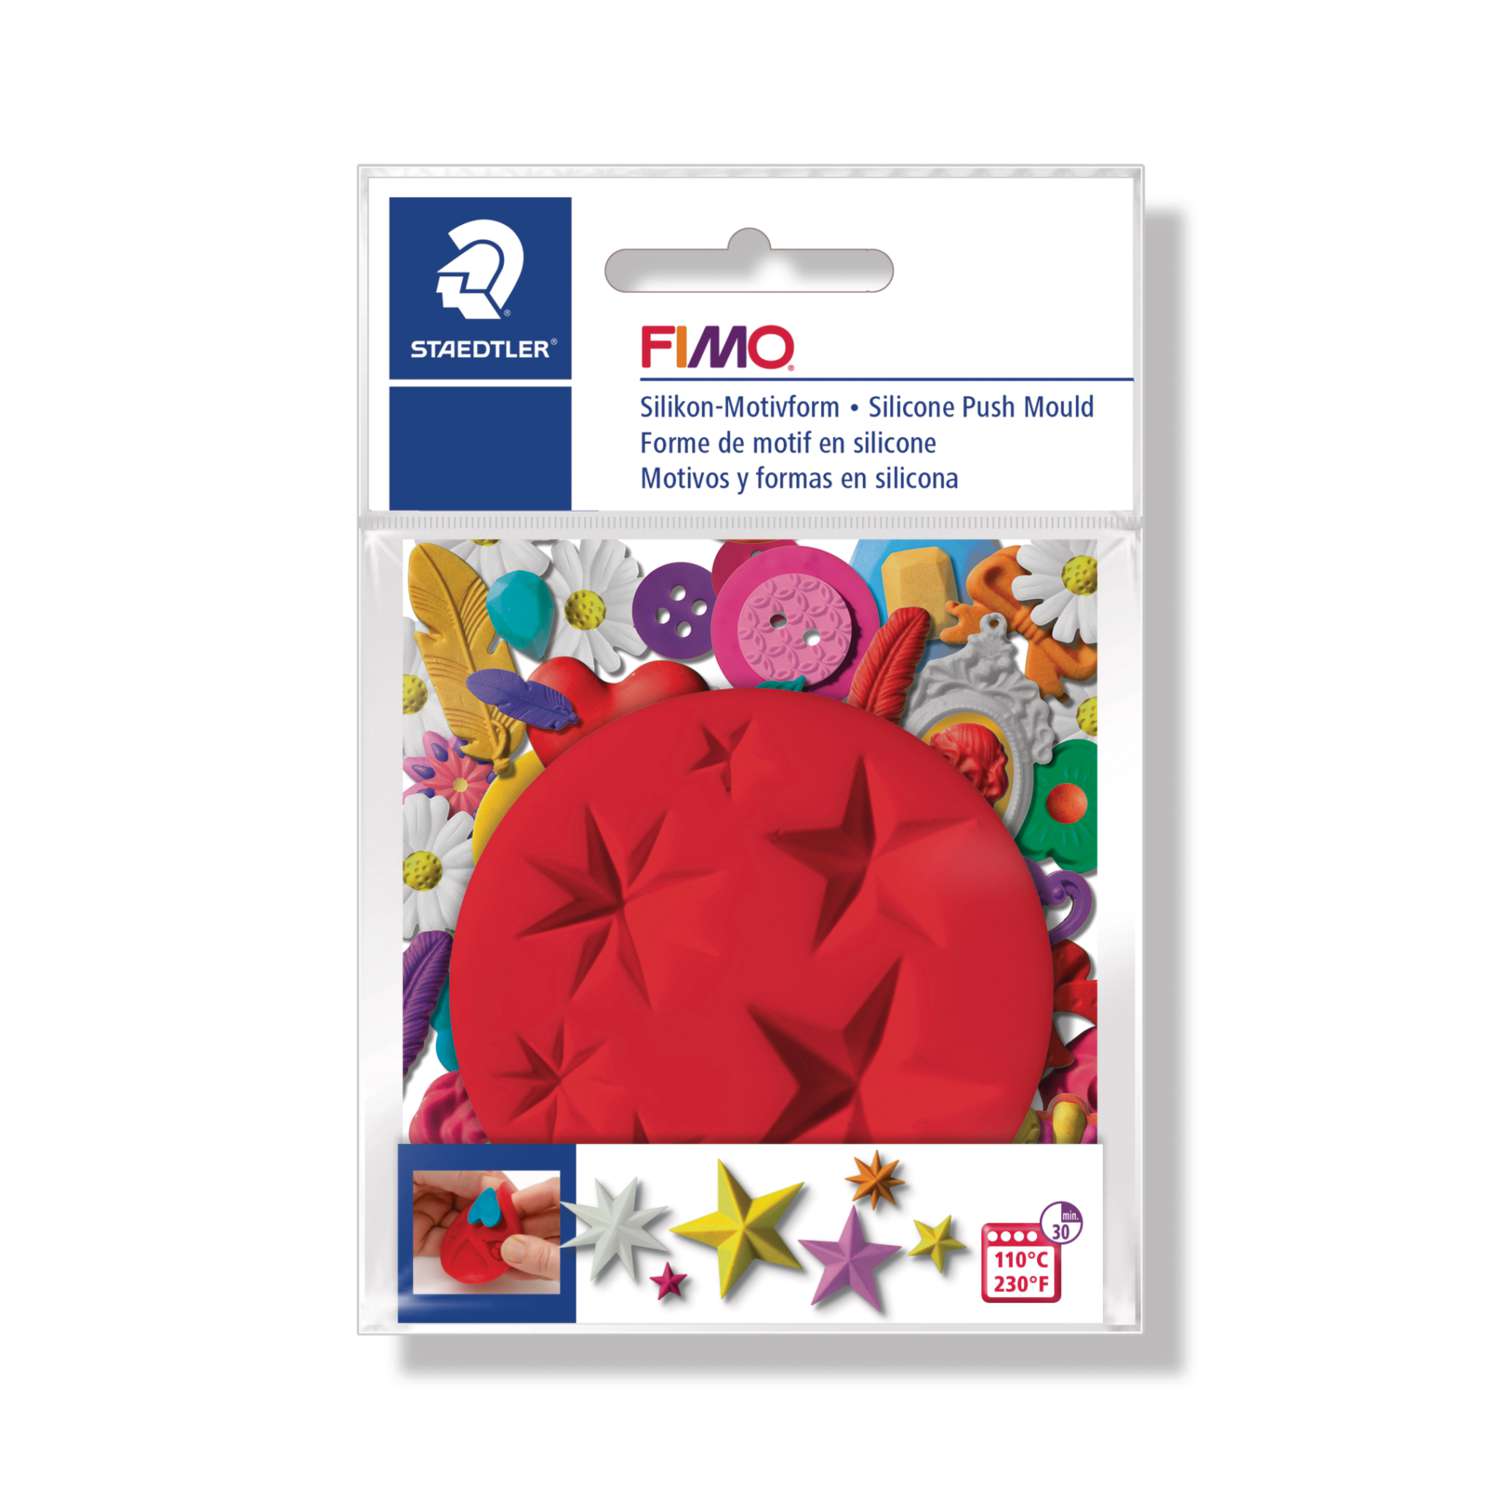 FIMO Silikonform Motivform für Fimo Kids Soft Modelliermassen Knete Motivformen 